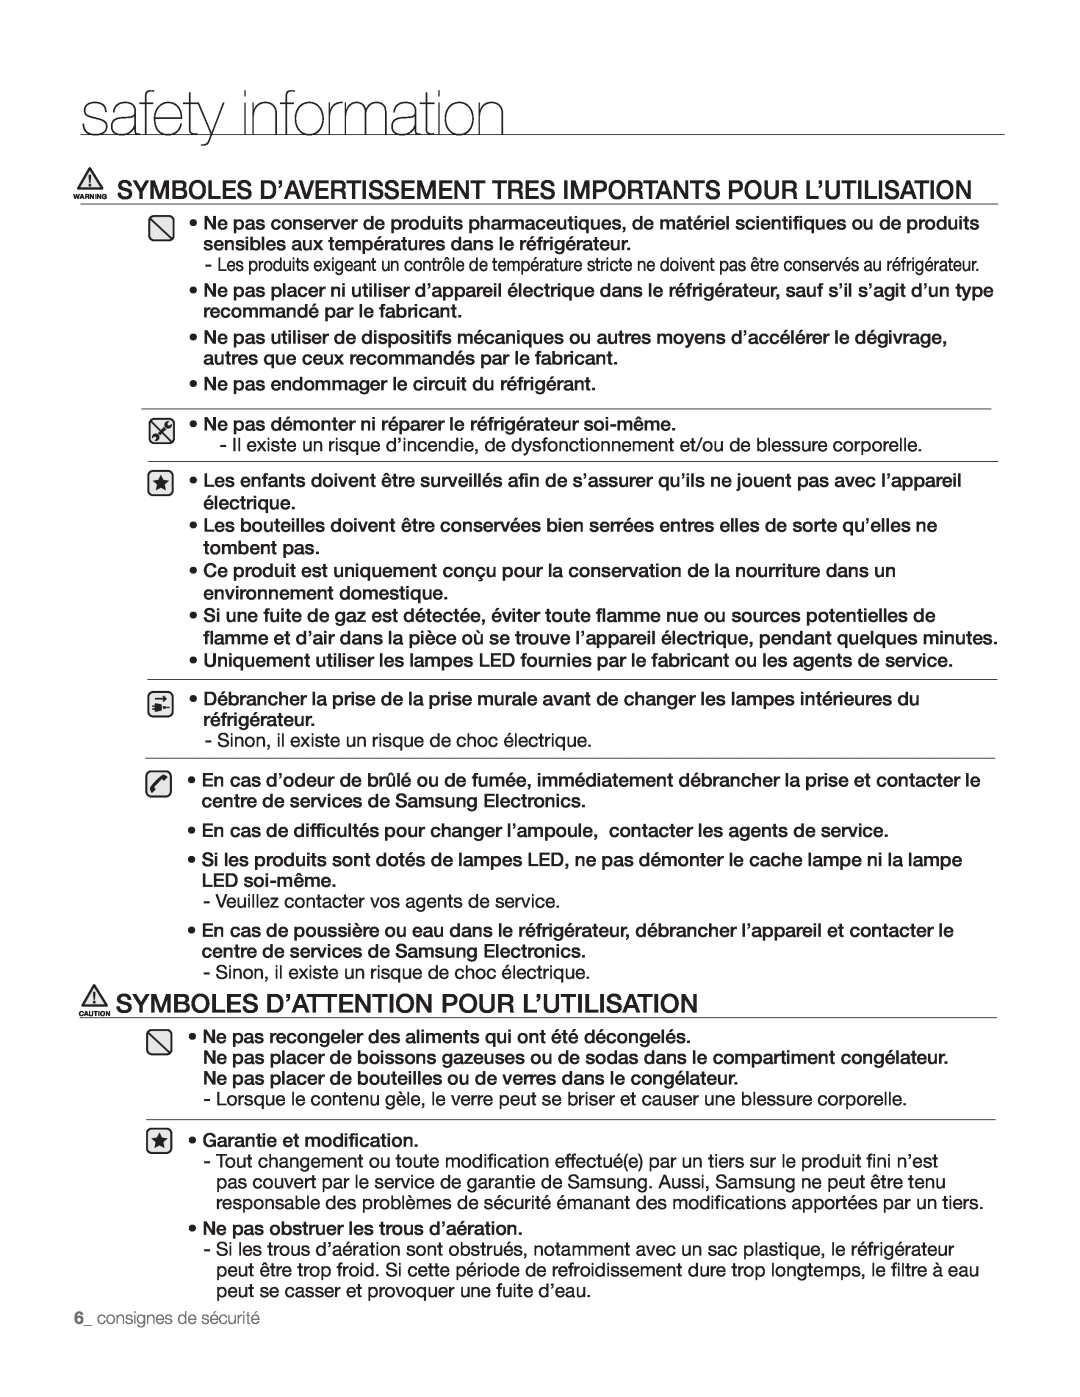 Samsung DA68-01890Q user manual Caution Symboles D’Attention Pour L’Utilisation, safety information 